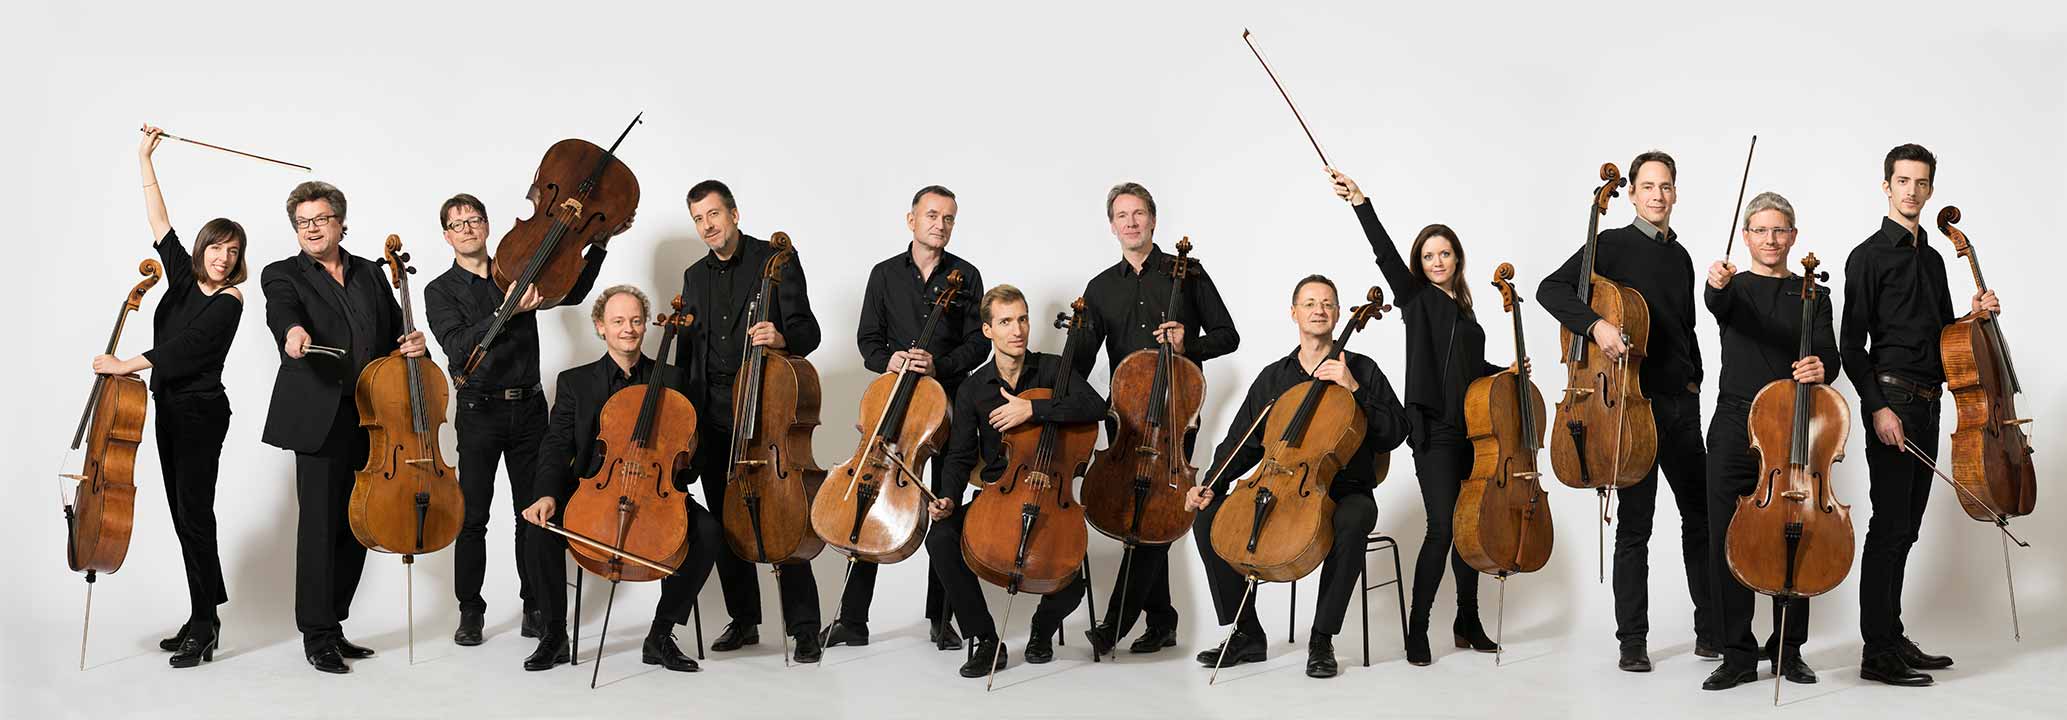 12 Cellisten der Berliner Philharmoniker © Peter Adamik